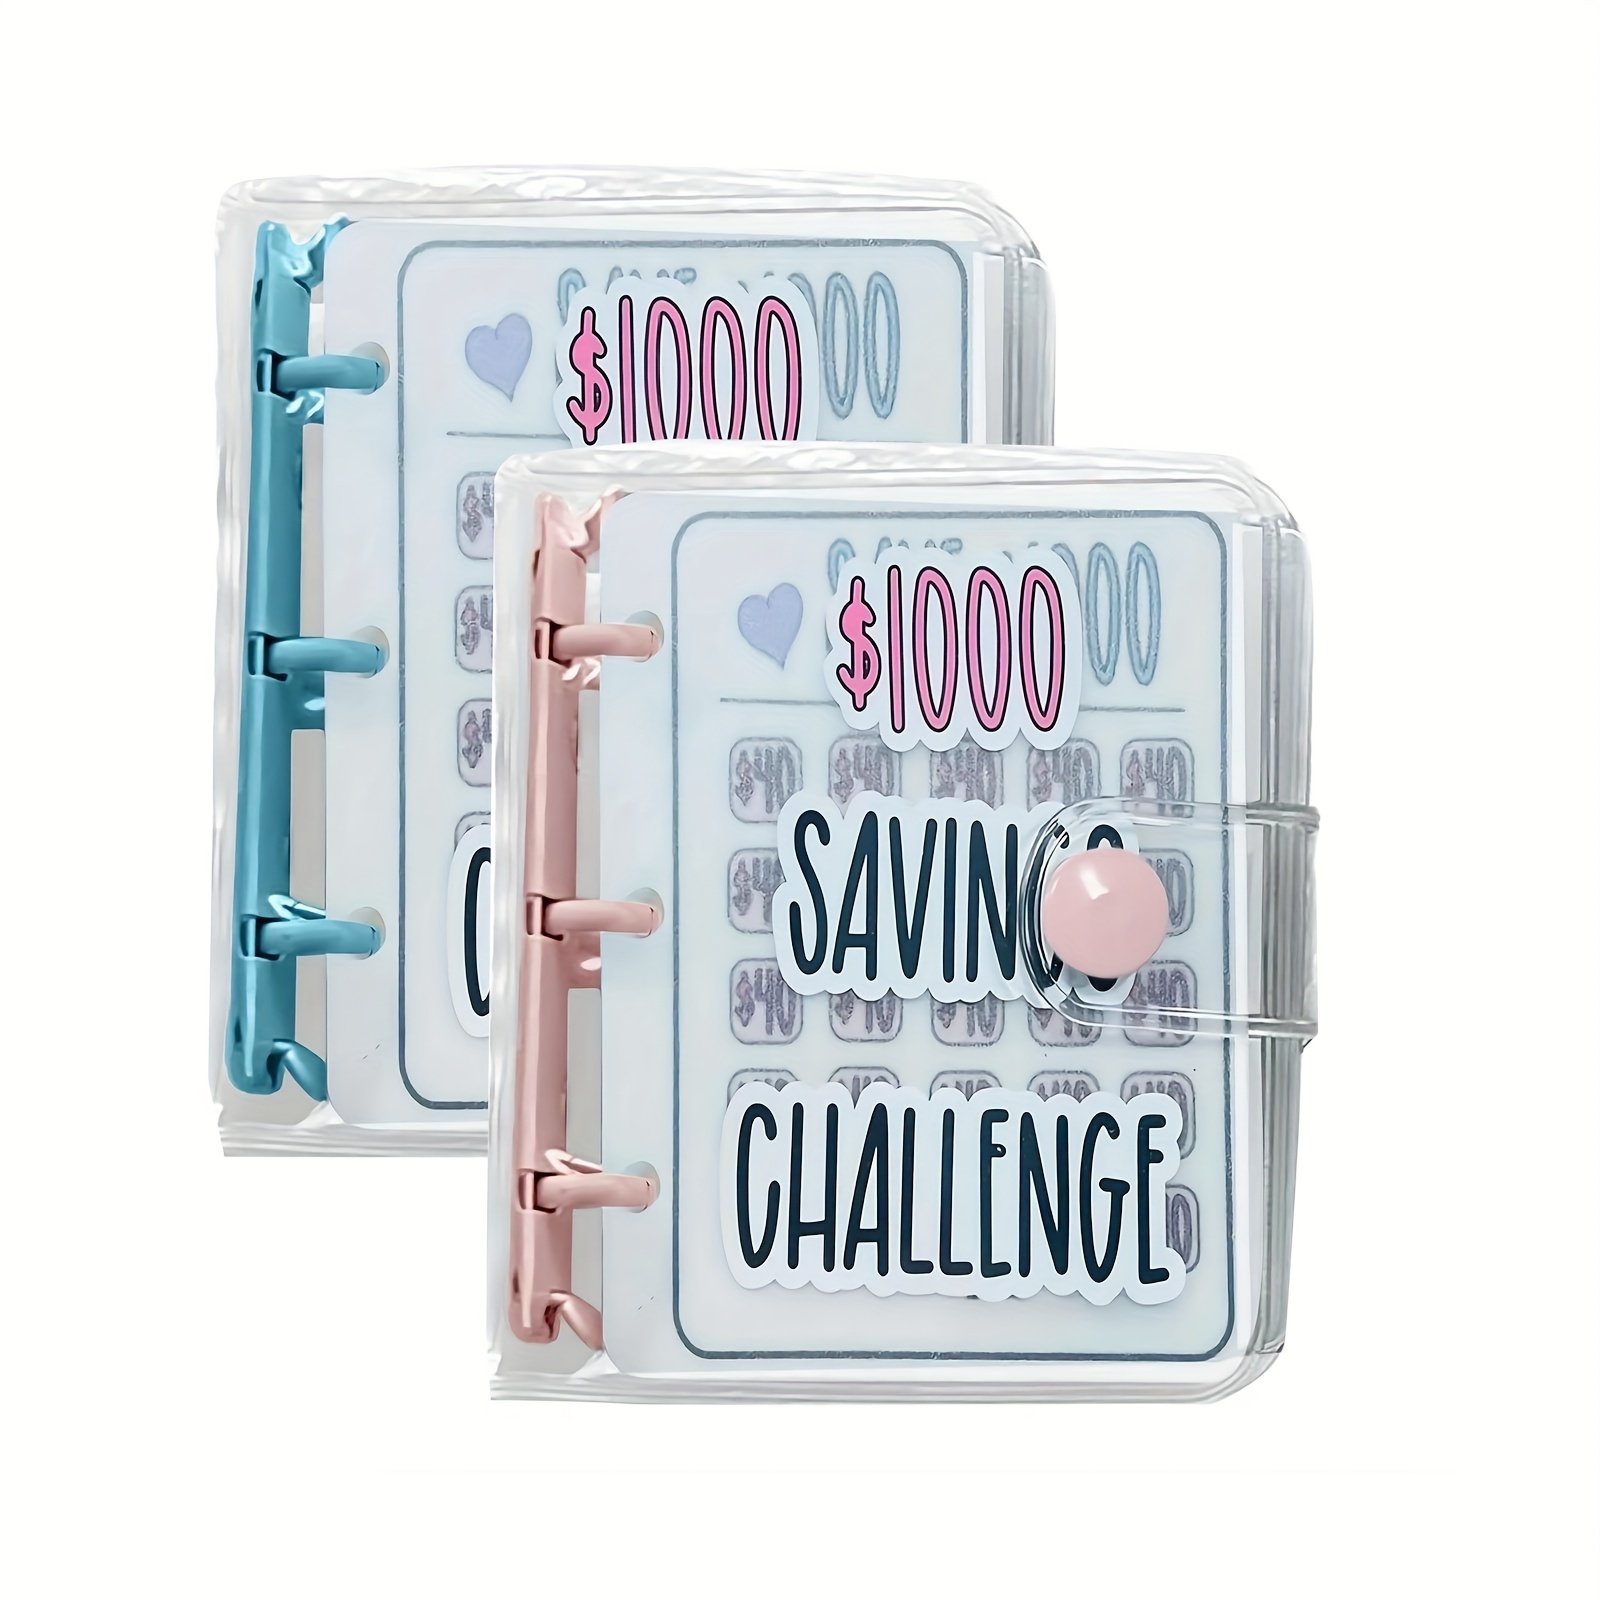 1000 Savings Challenge Binder, Money Saving Binder, Savings Challenges Book  with Envelopes, Envelope Savings Challenge, Mini Budget Binder with Cash E